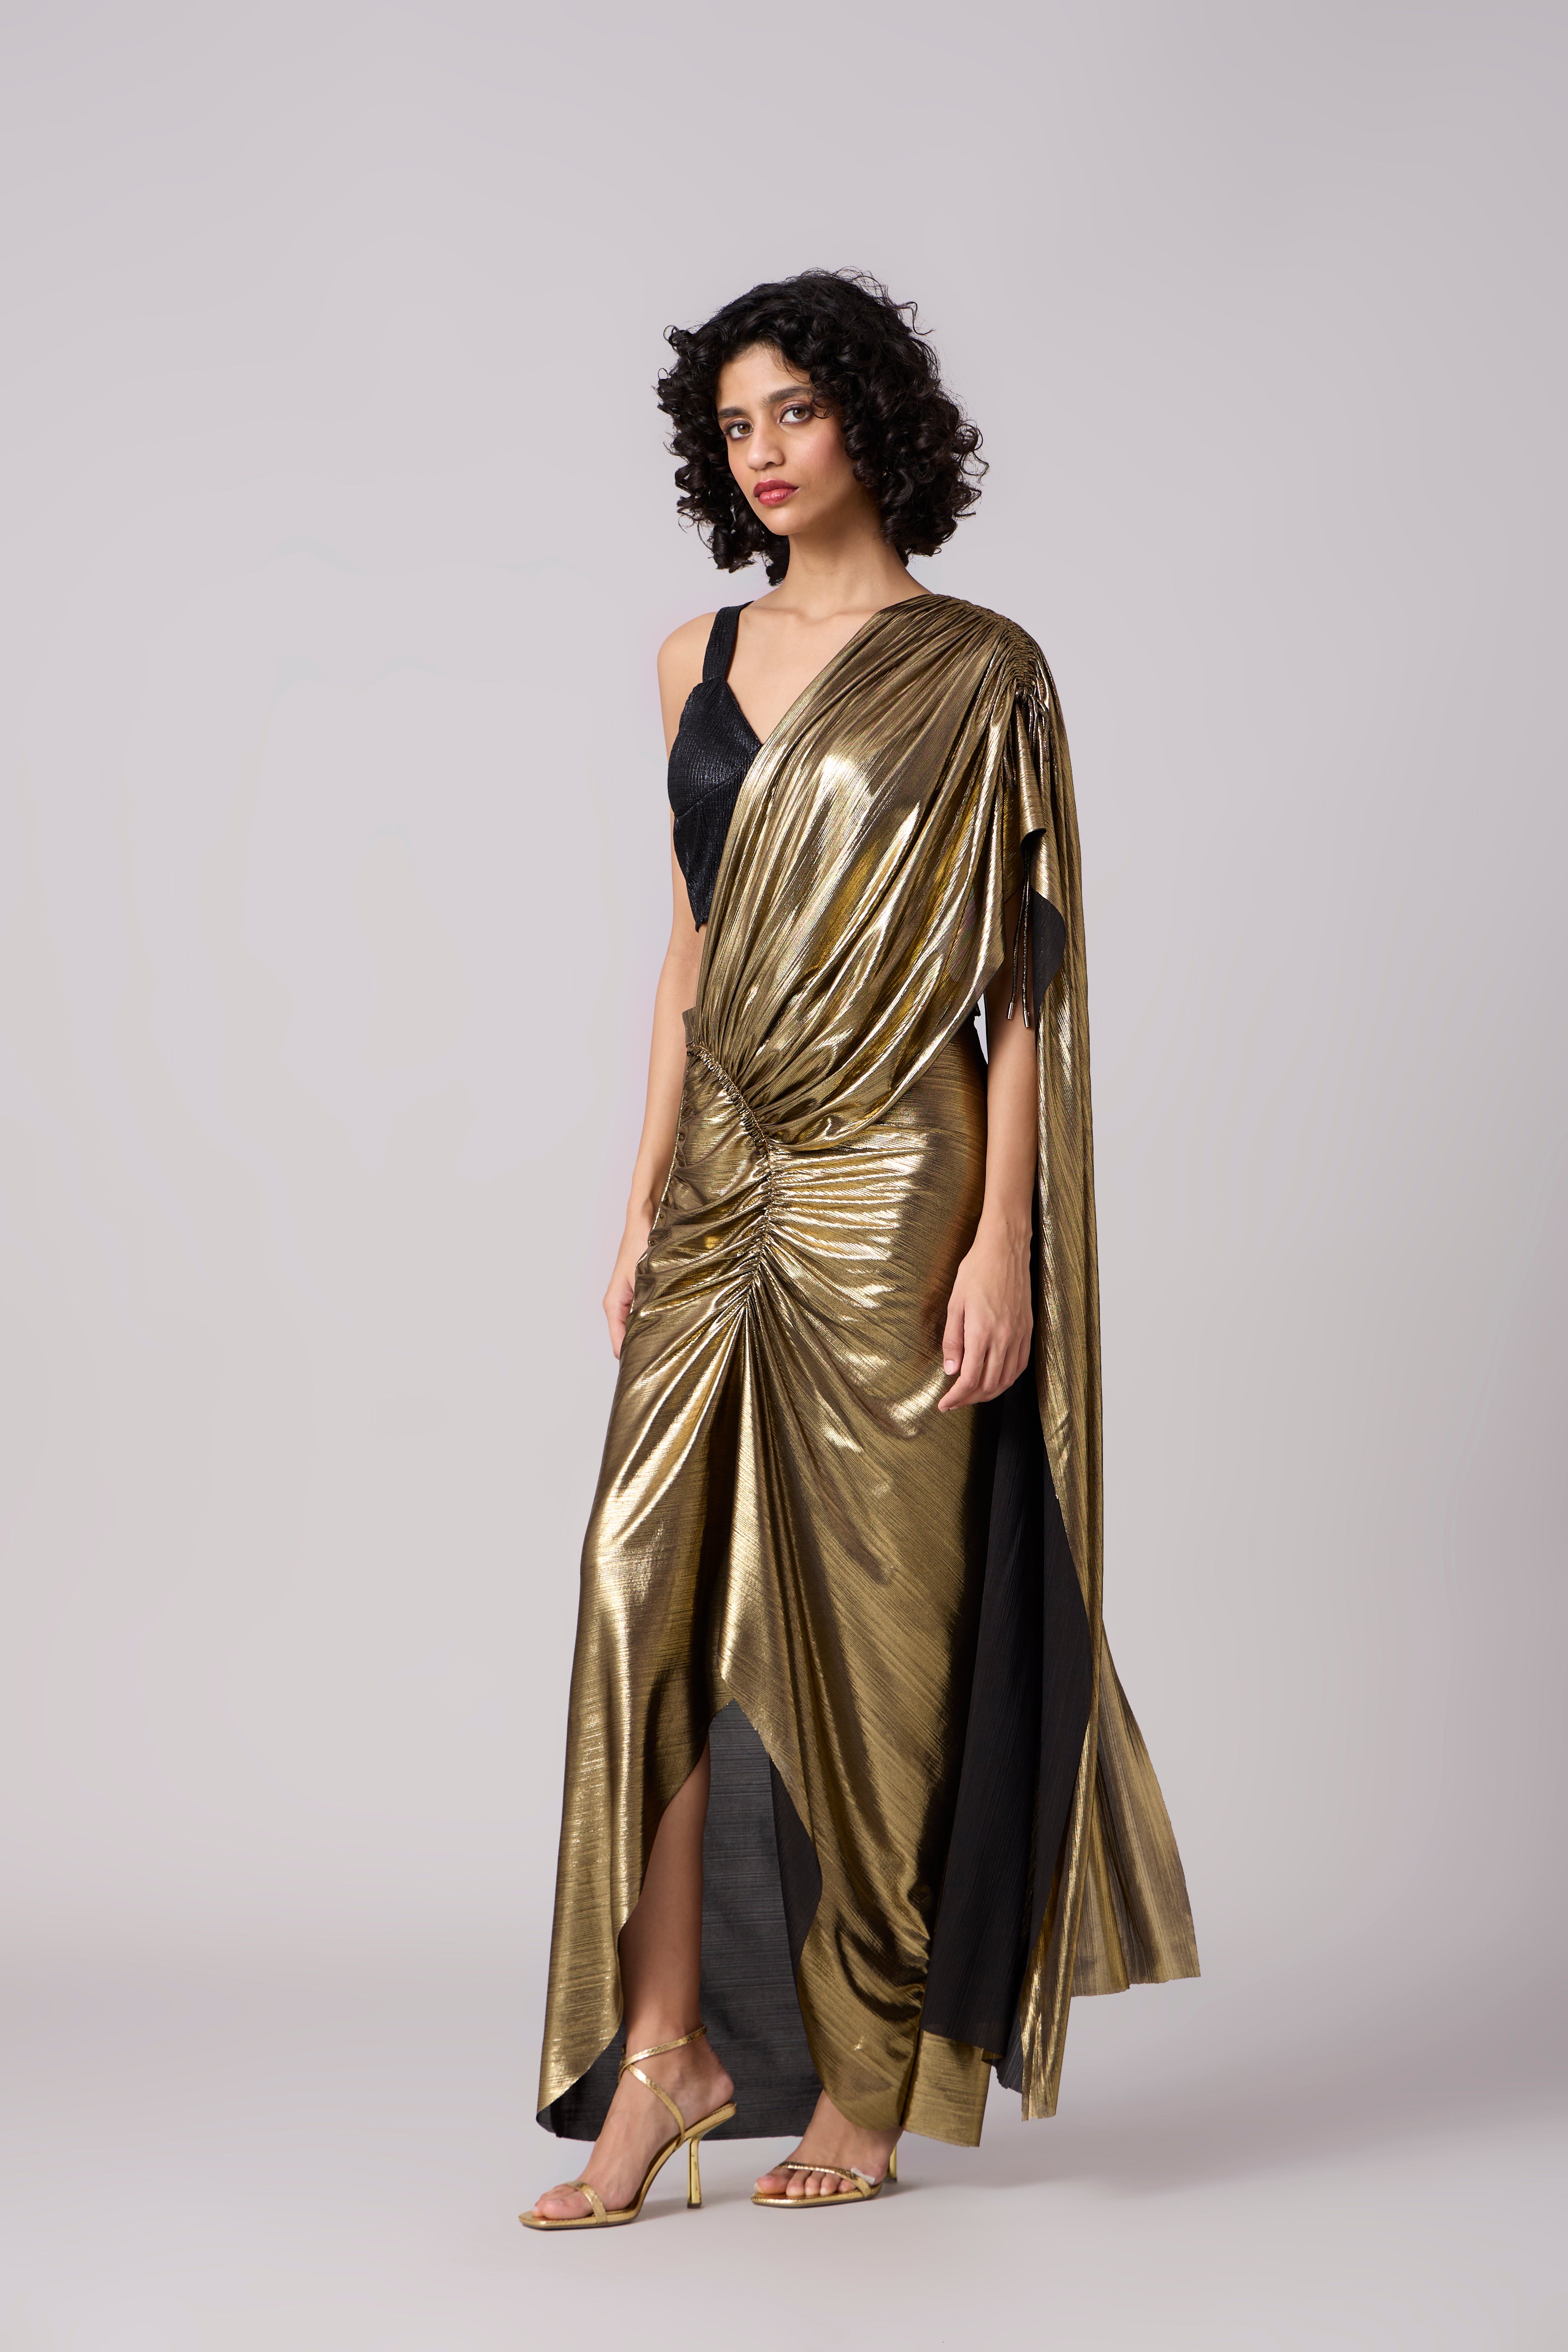 Ayra Saree - Dark Gold